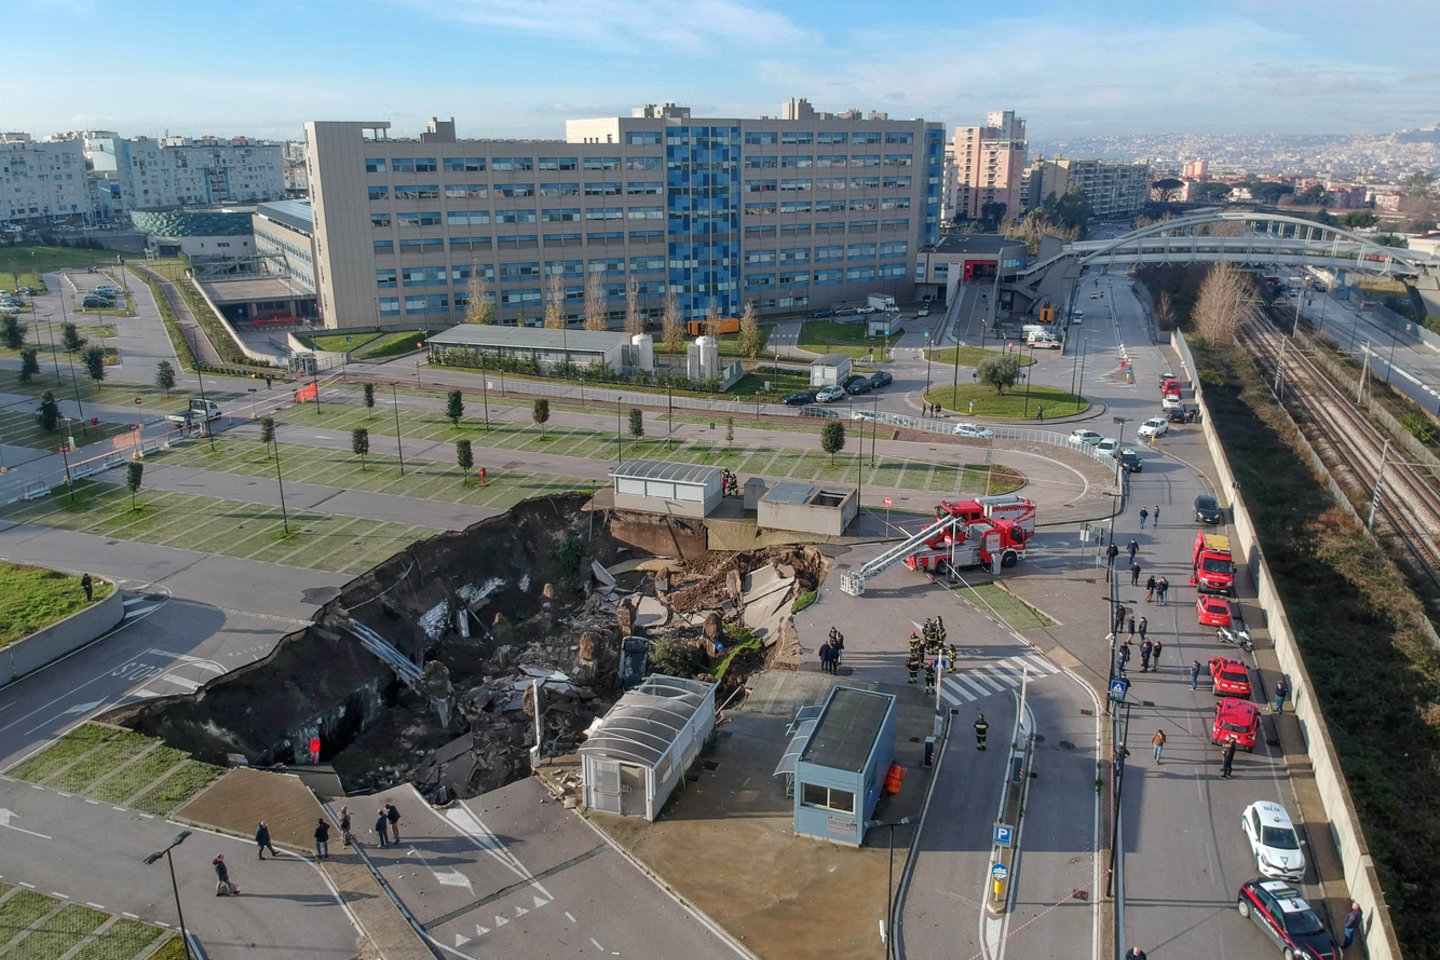  Italijoje kelis automobilius prarijo įgriuva ligoninės aikštelėje.  <br> IPA/Scanpix nuotr.